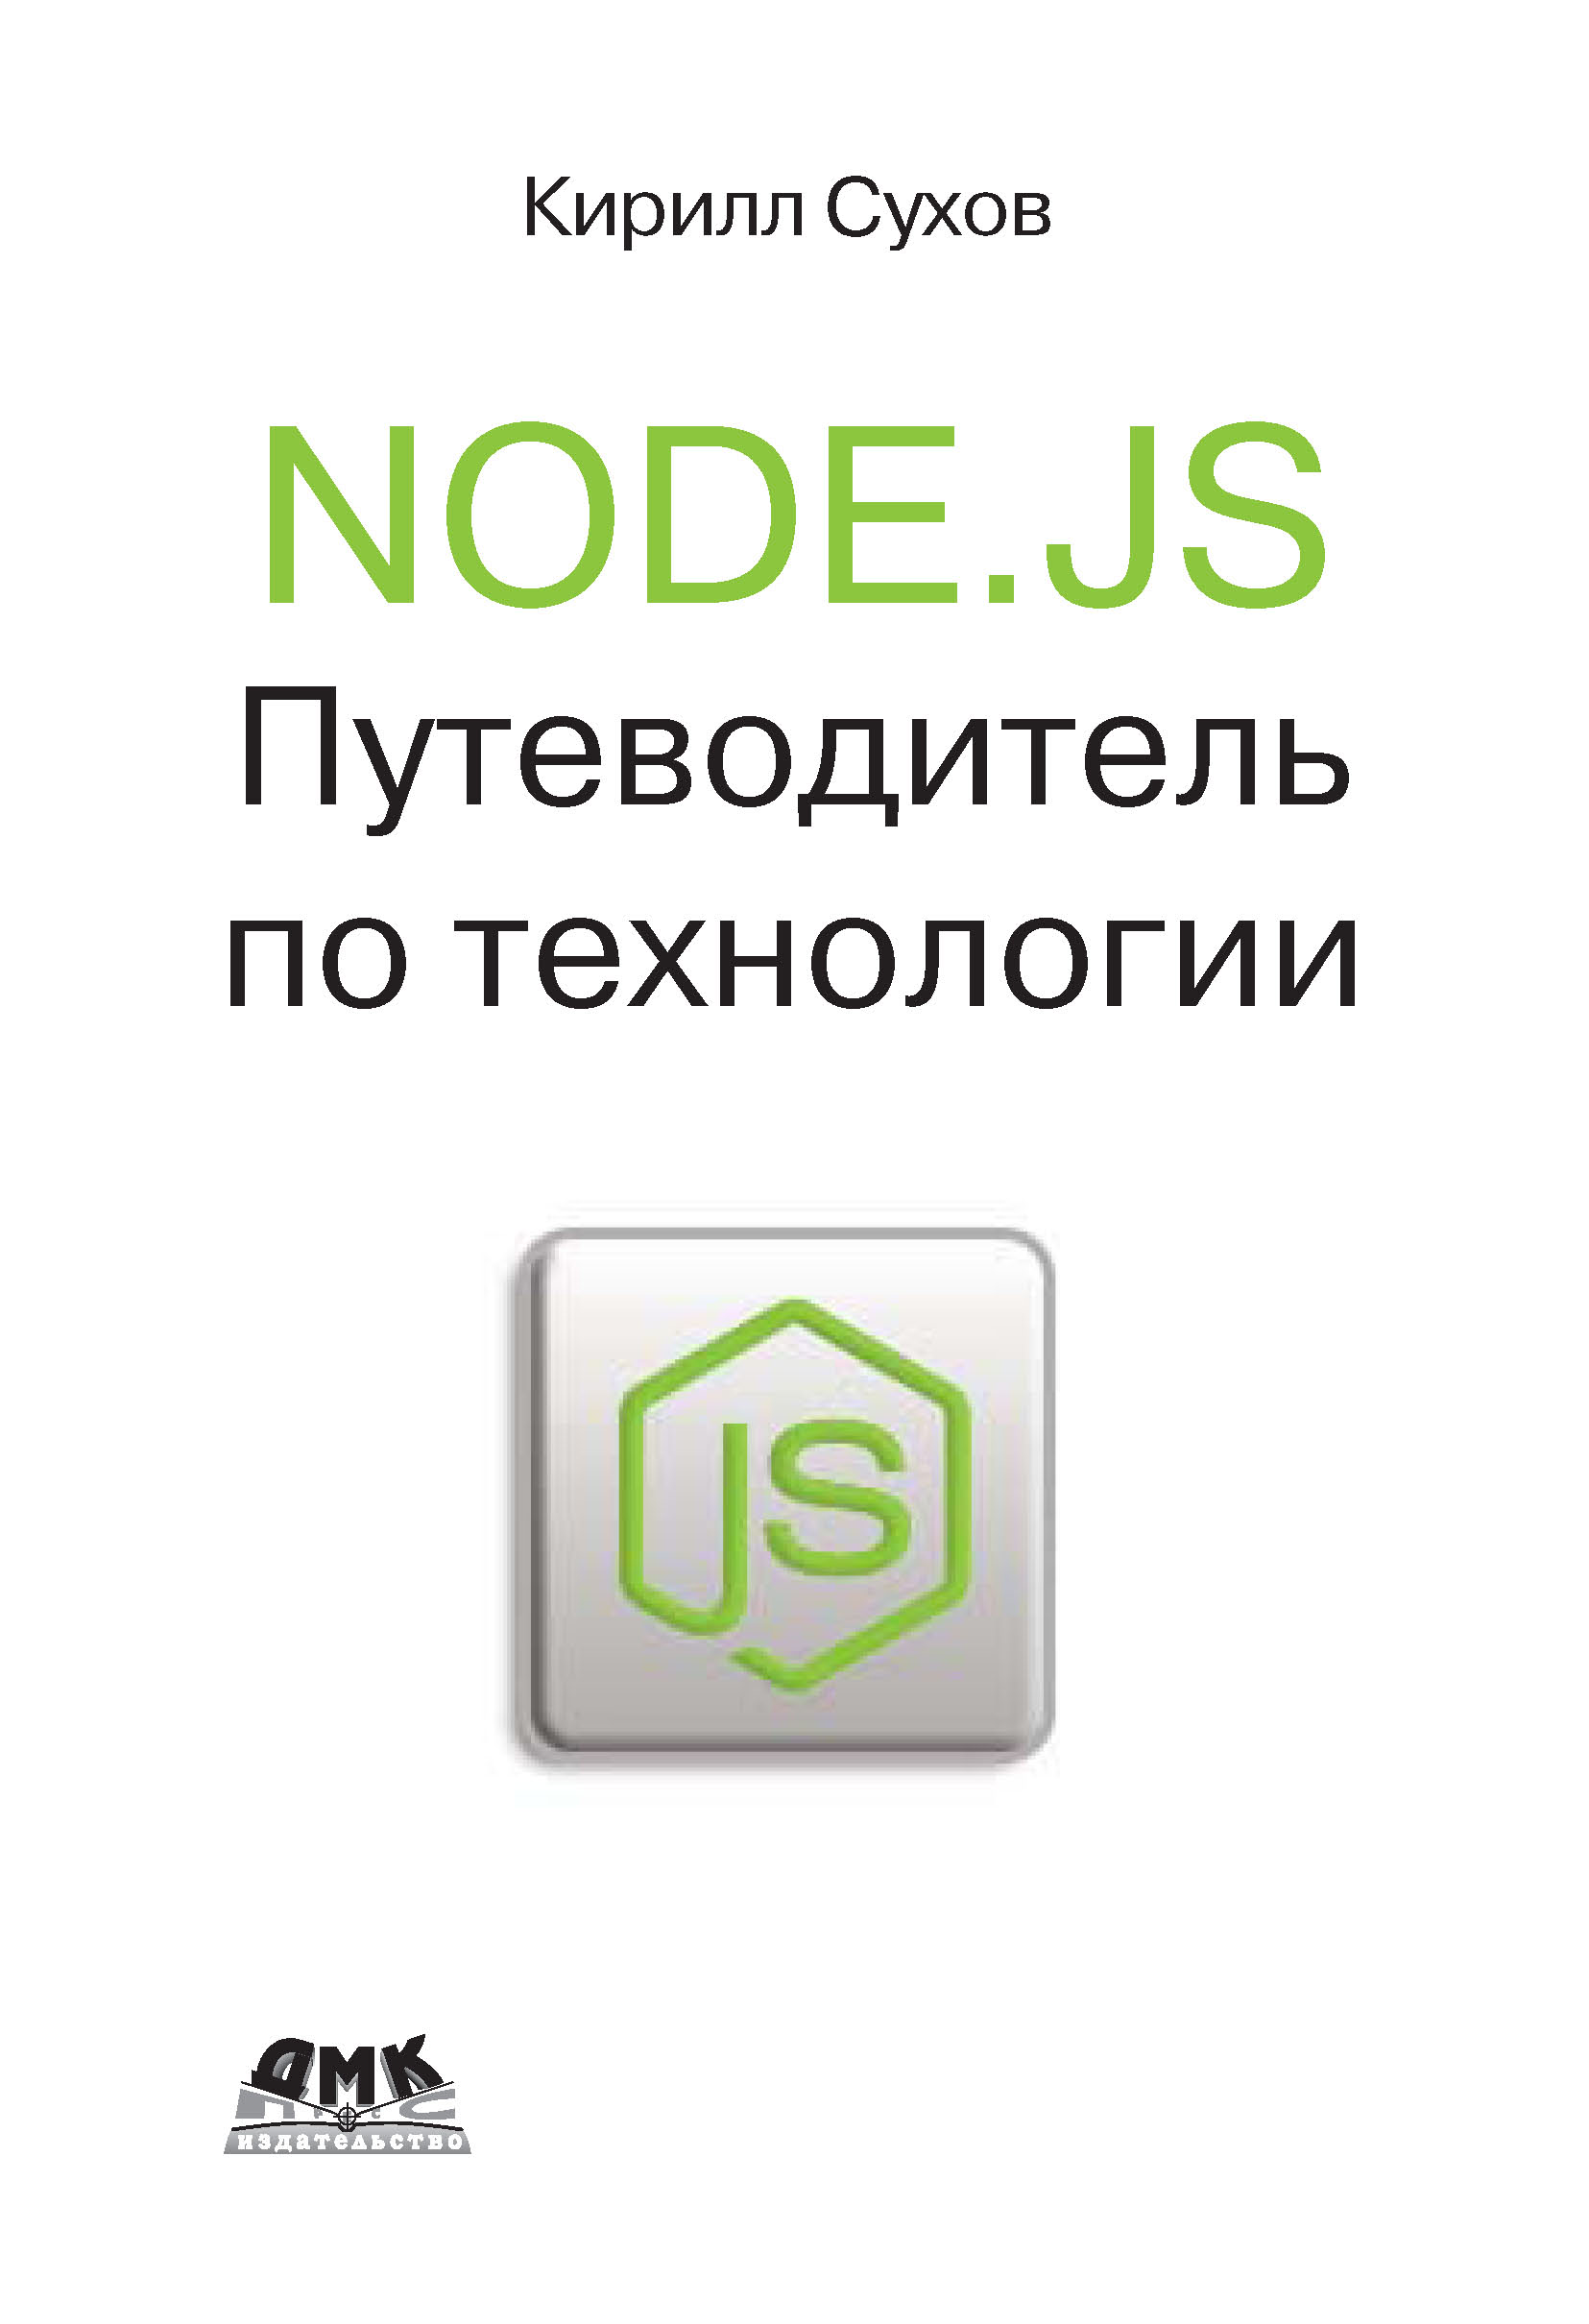 Книга  Node.js. Путеводитель по технологии созданная К. К. Сухов может относится к жанру интернет, программирование. Стоимость электронной книги Node.js. Путеводитель по технологии с идентификатором 10016580 составляет 439.00 руб.